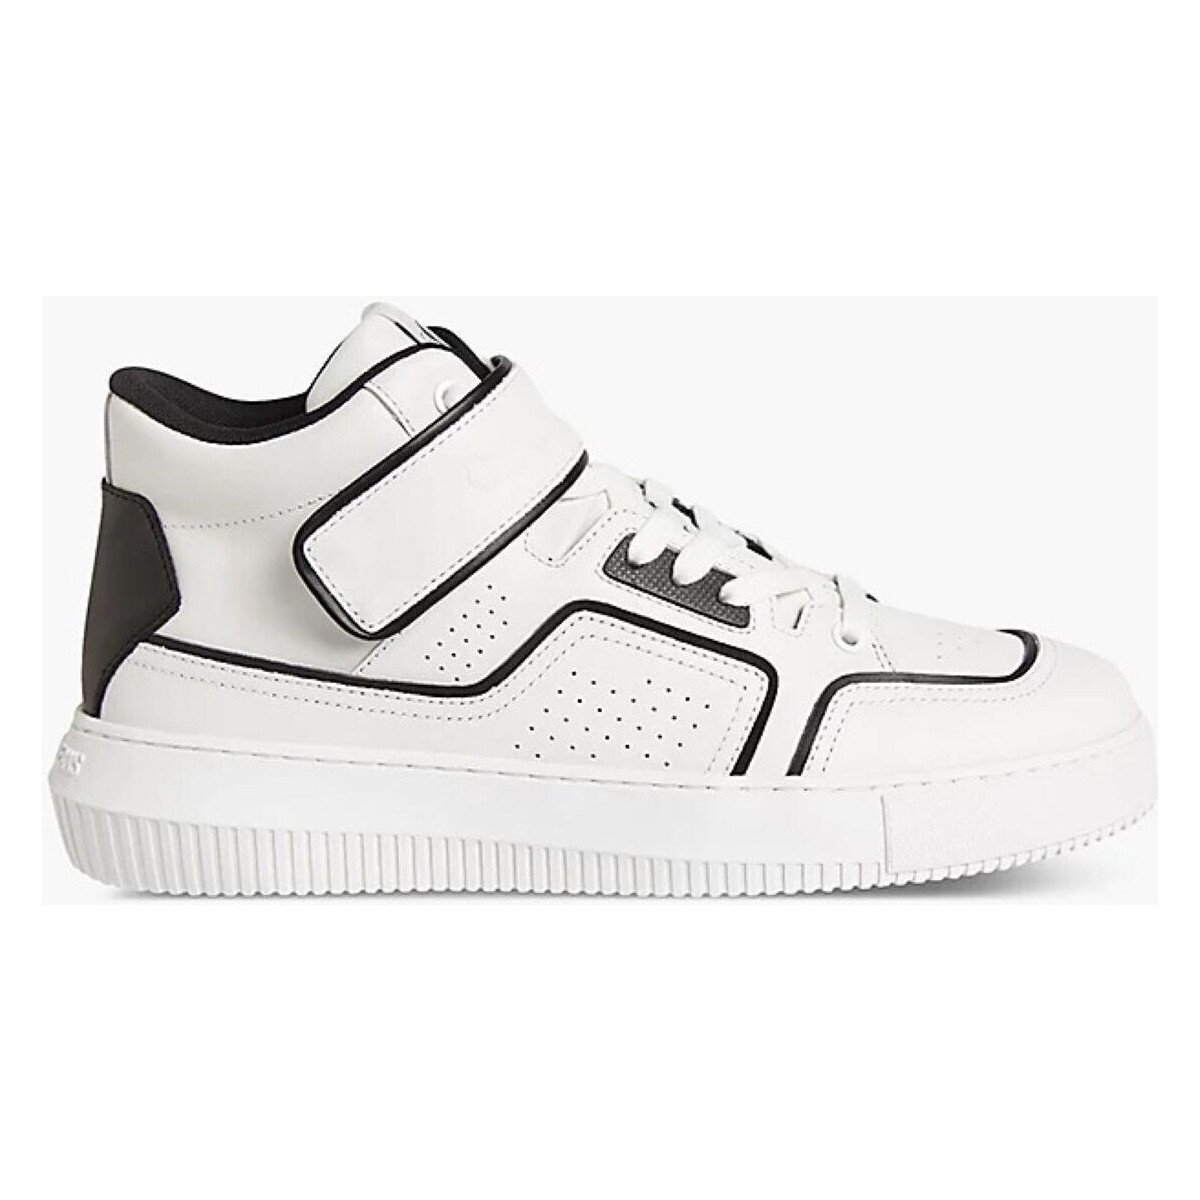 Παπούτσια Άνδρας Χαμηλά Sneakers Calvin Klein Jeans YM0YM00426 Άσπρο